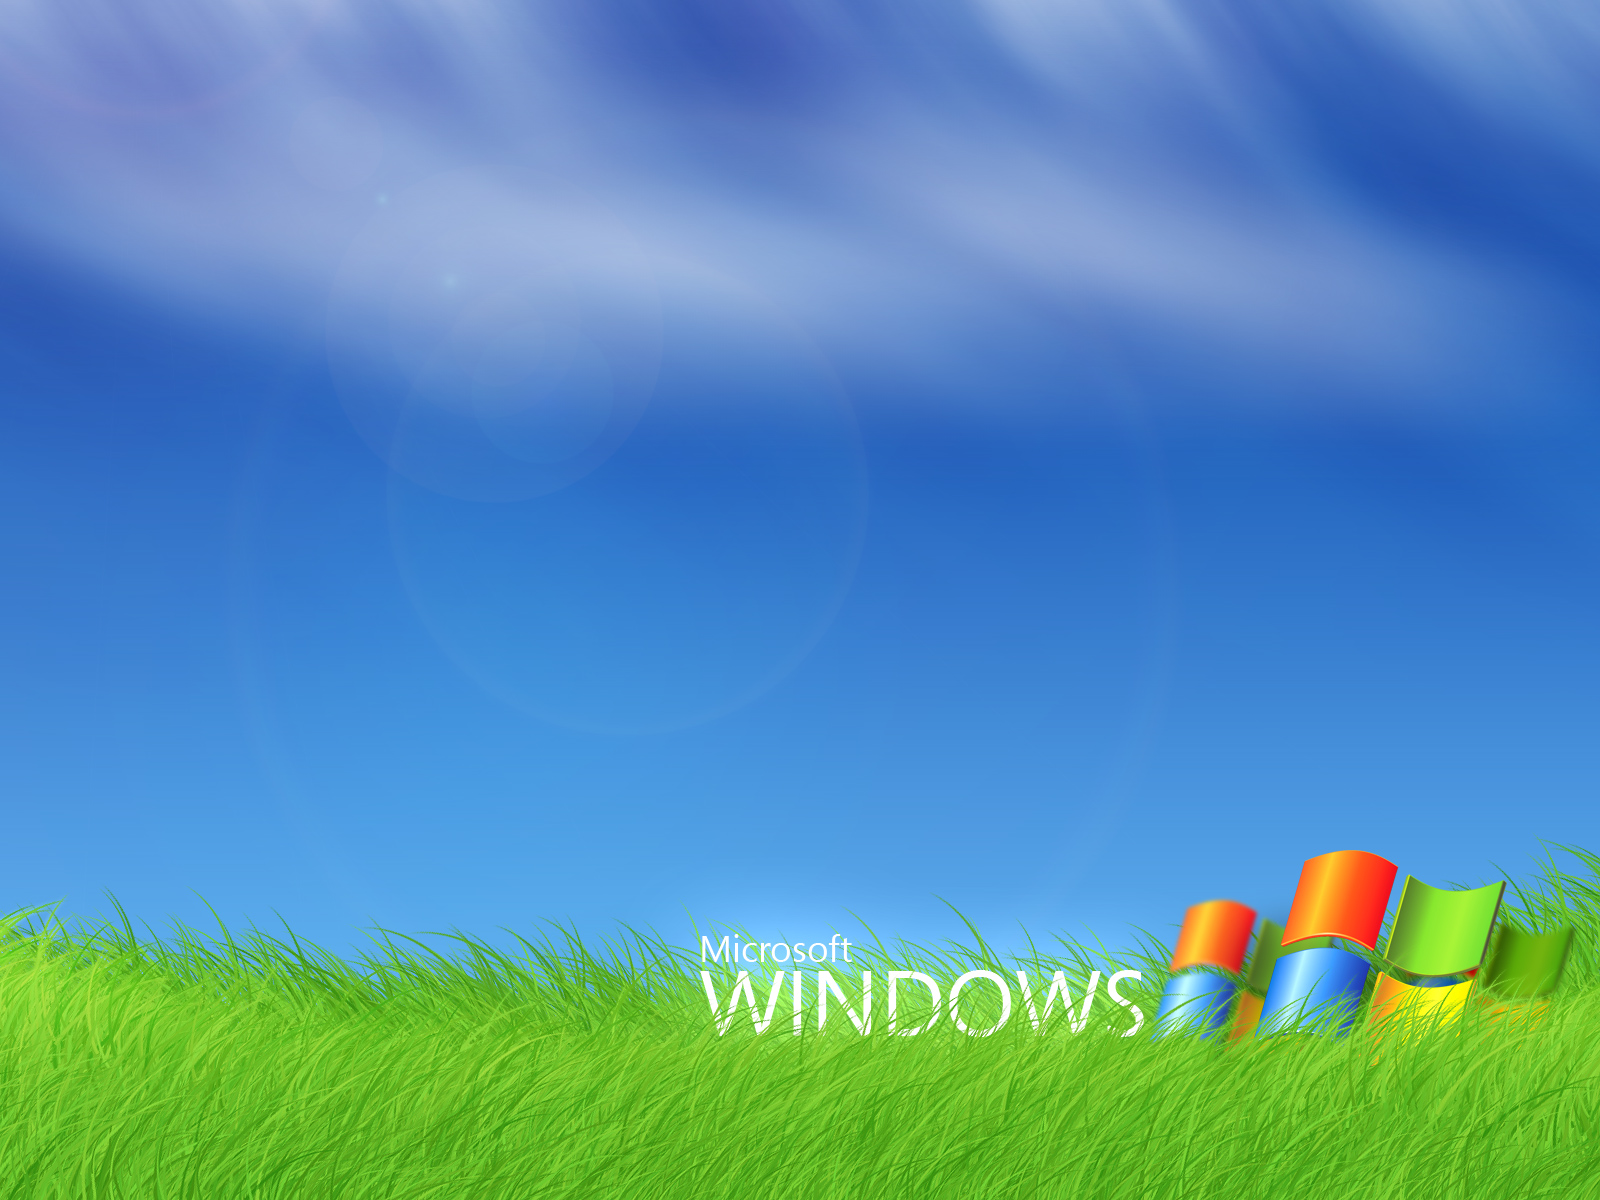 Trang trí cho desktop của bạn với hình nền Microsoft Windows độc đáo và đẹp mắt. Lựa chọn giữa hàng ngàn thiết kế để thể hiện phong cách của bạn, tạo điểm nhấn cho máy tính của bạn trong mắt mọi người.